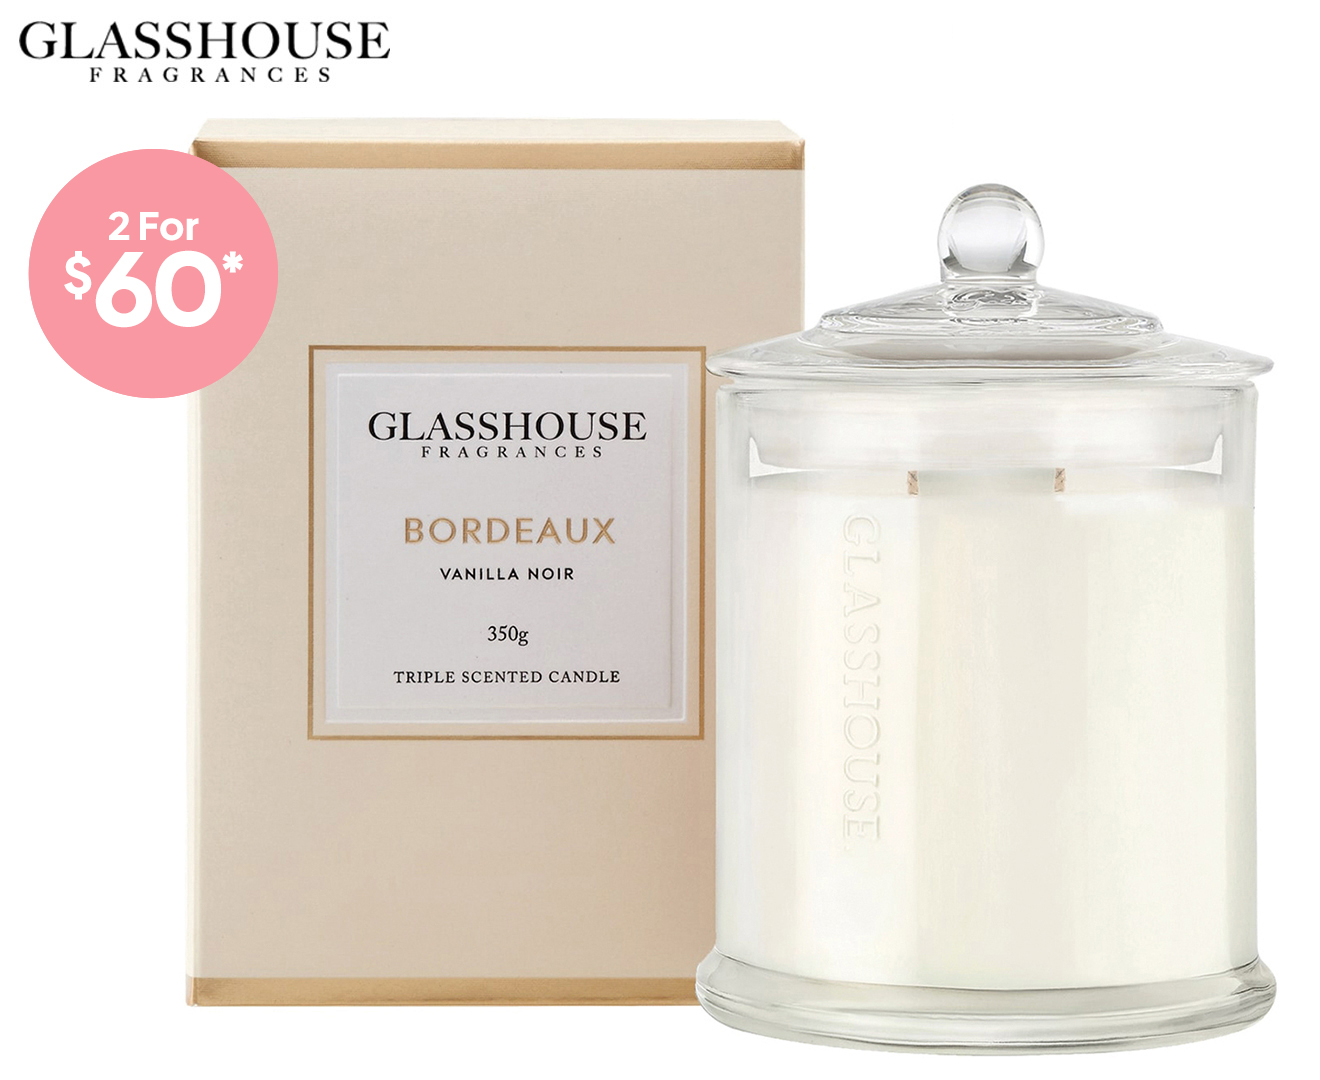 Glasshouse Bordeaux Vanilla Noir Triple Scented Candle 350g